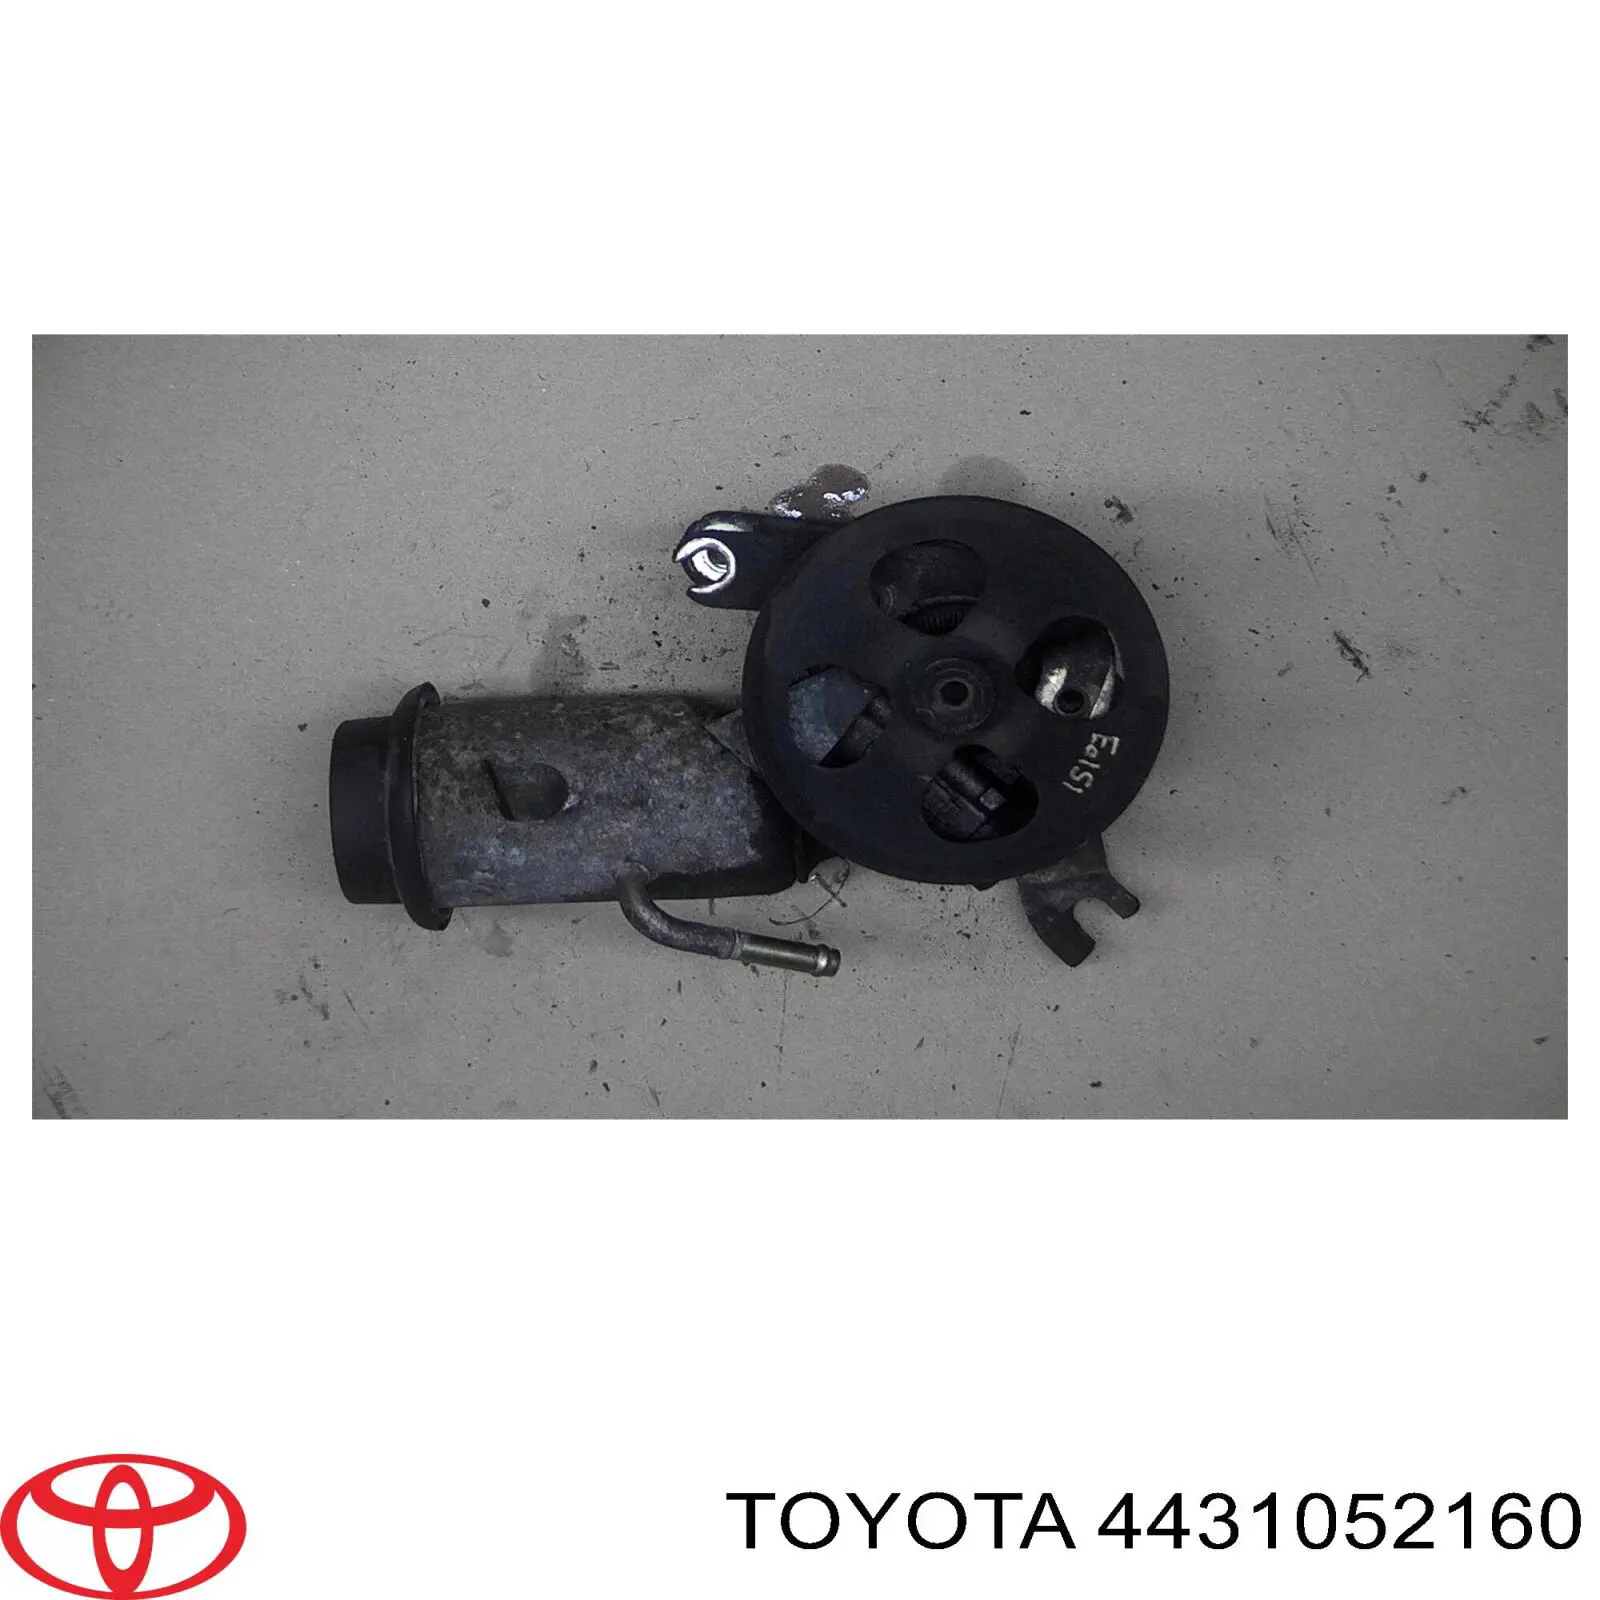 Bomba de dirección asistida Toyota Yaris P10